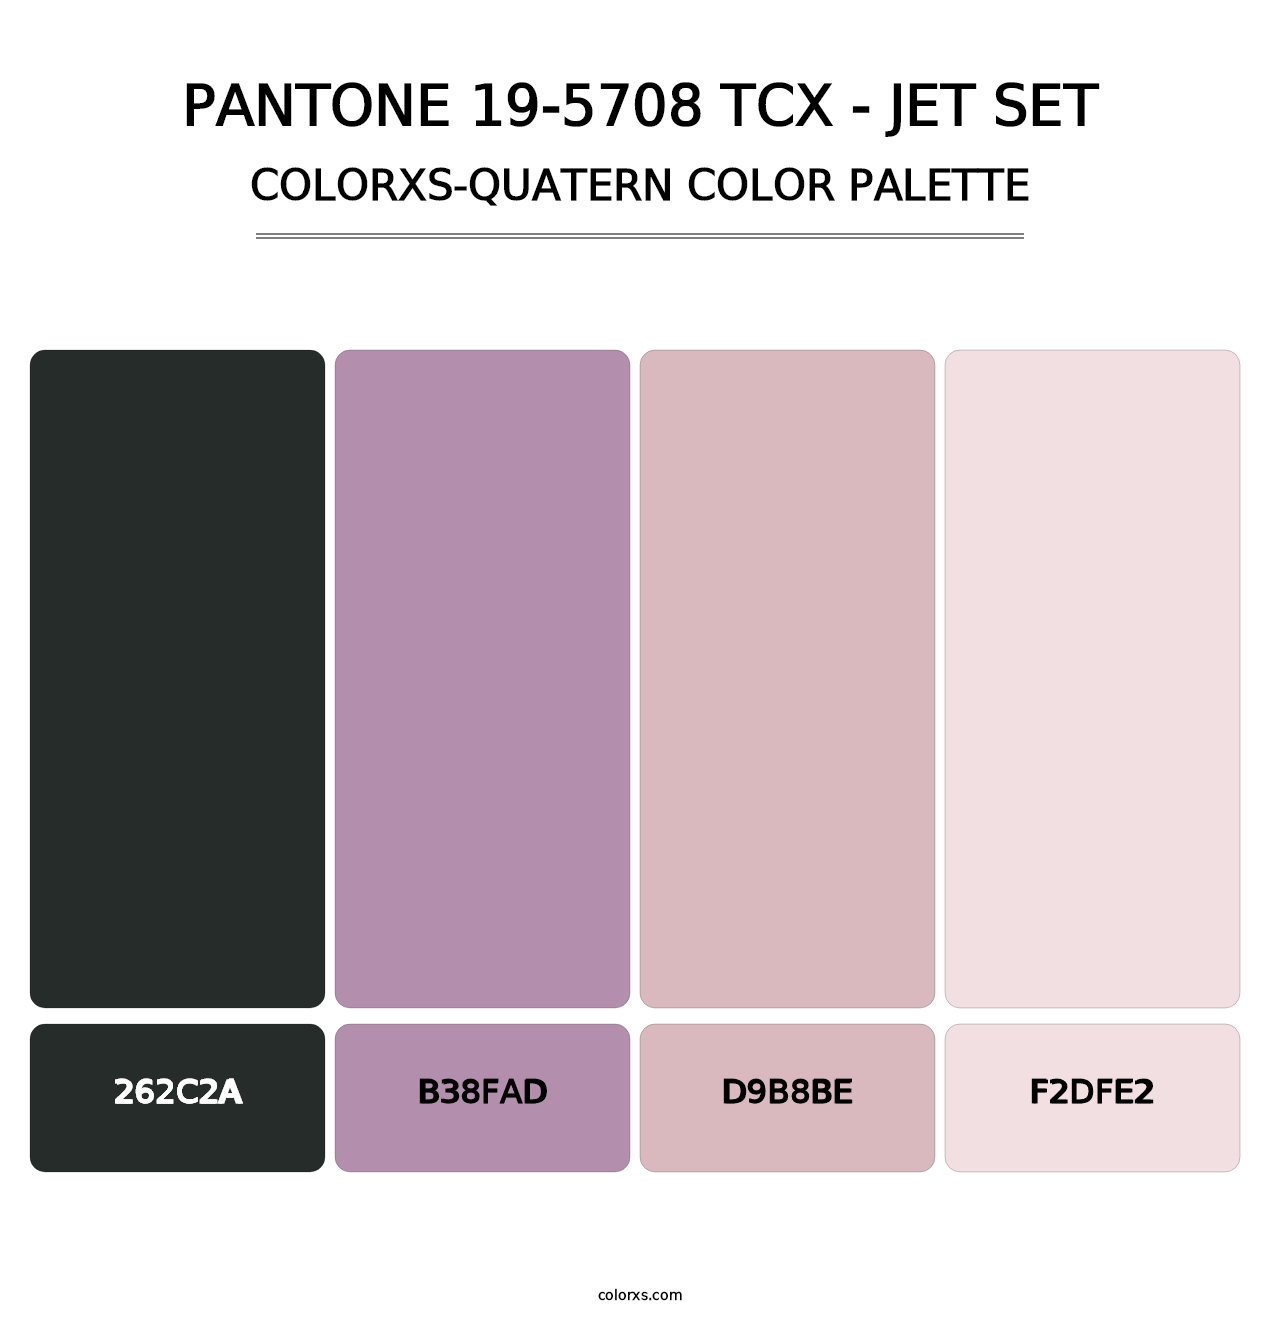 PANTONE 19-5708 TCX - Jet Set - Colorxs Quatern Palette